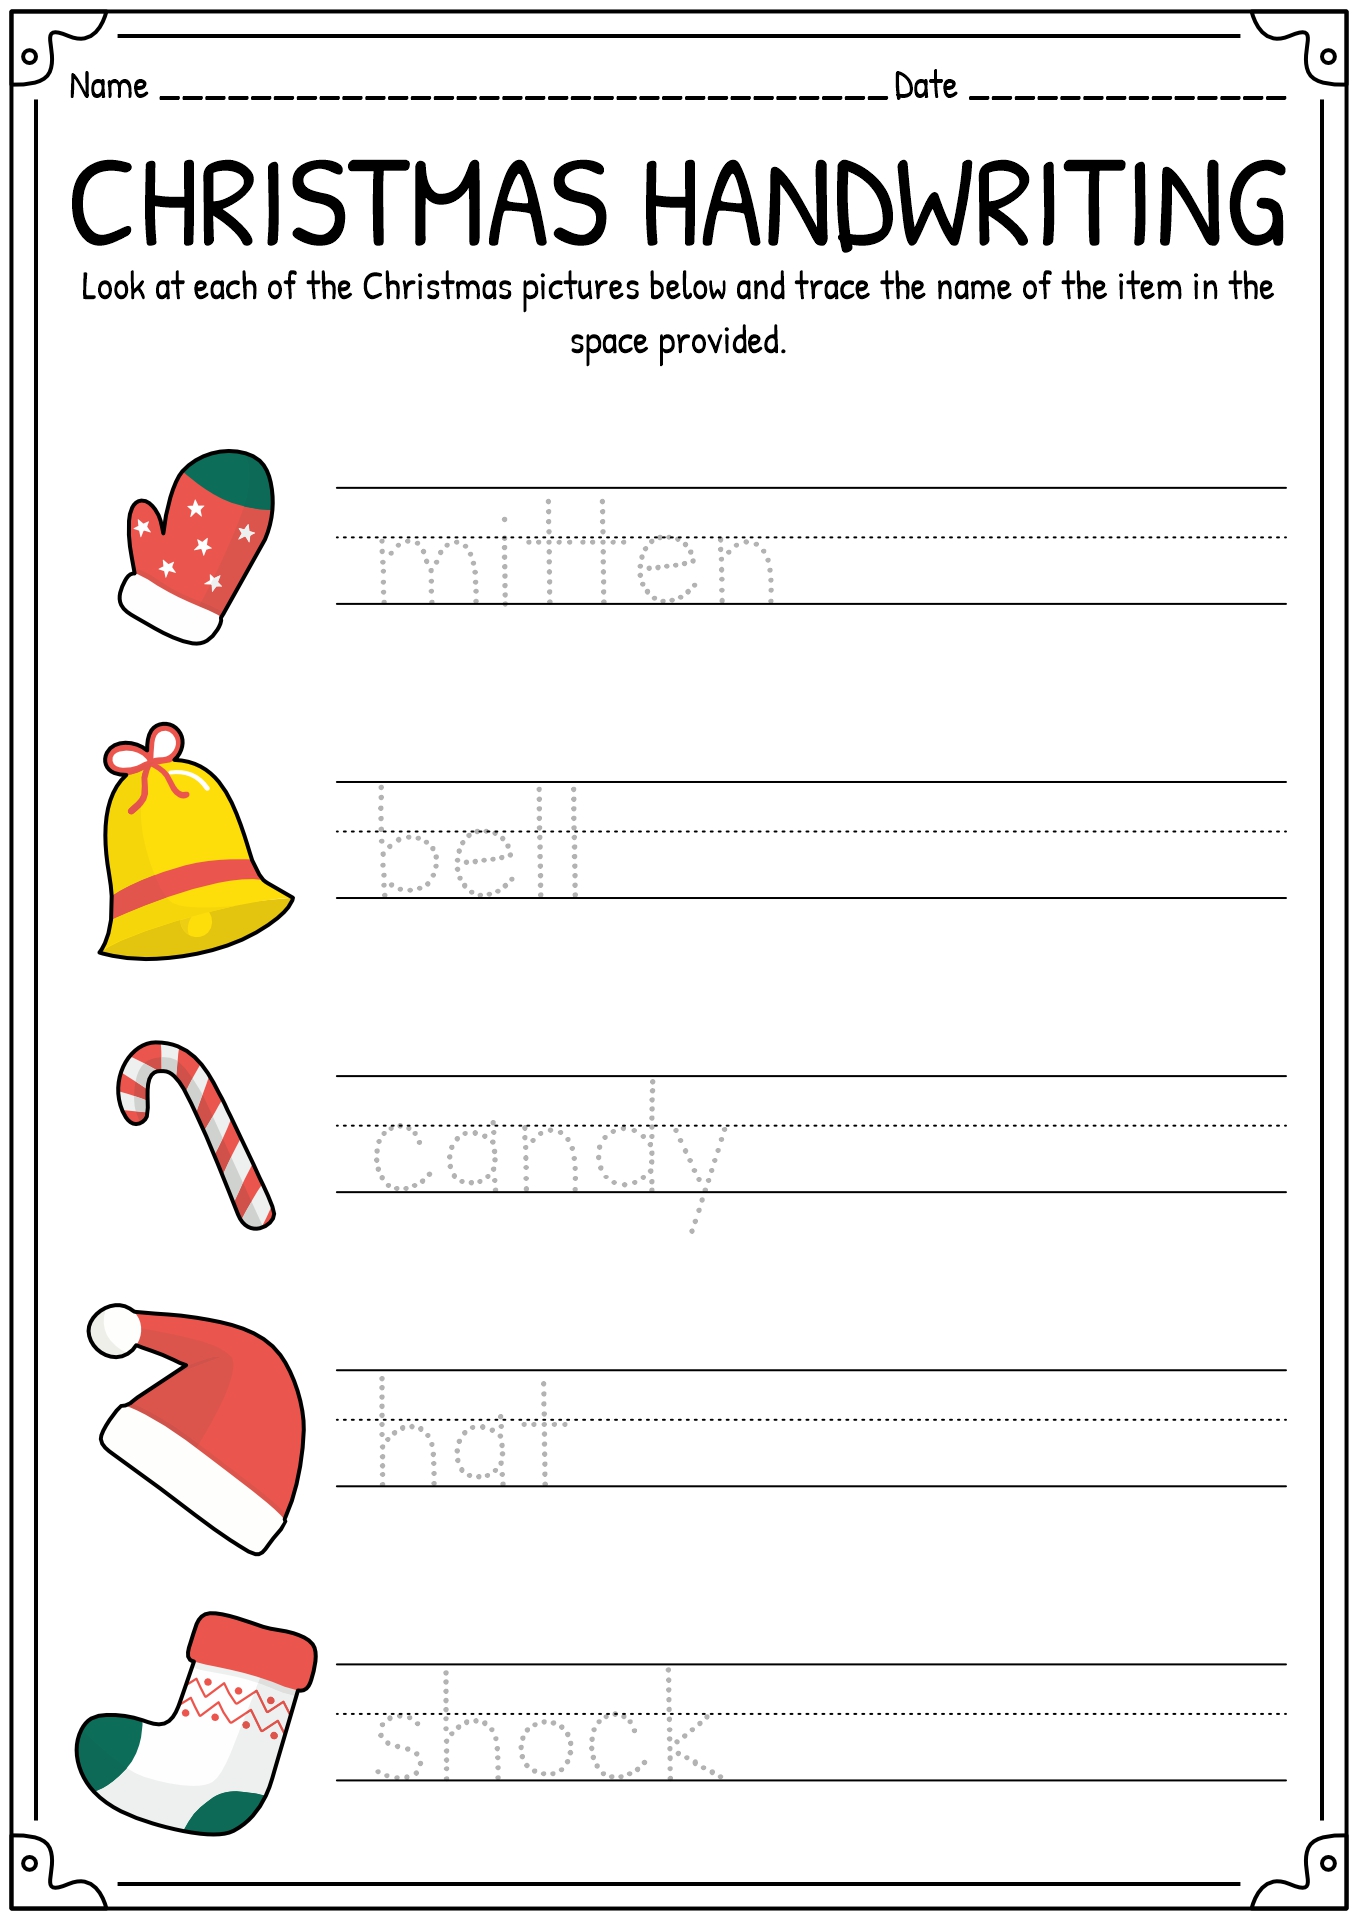 Preschool Christmas Handwriting Worksheets Image